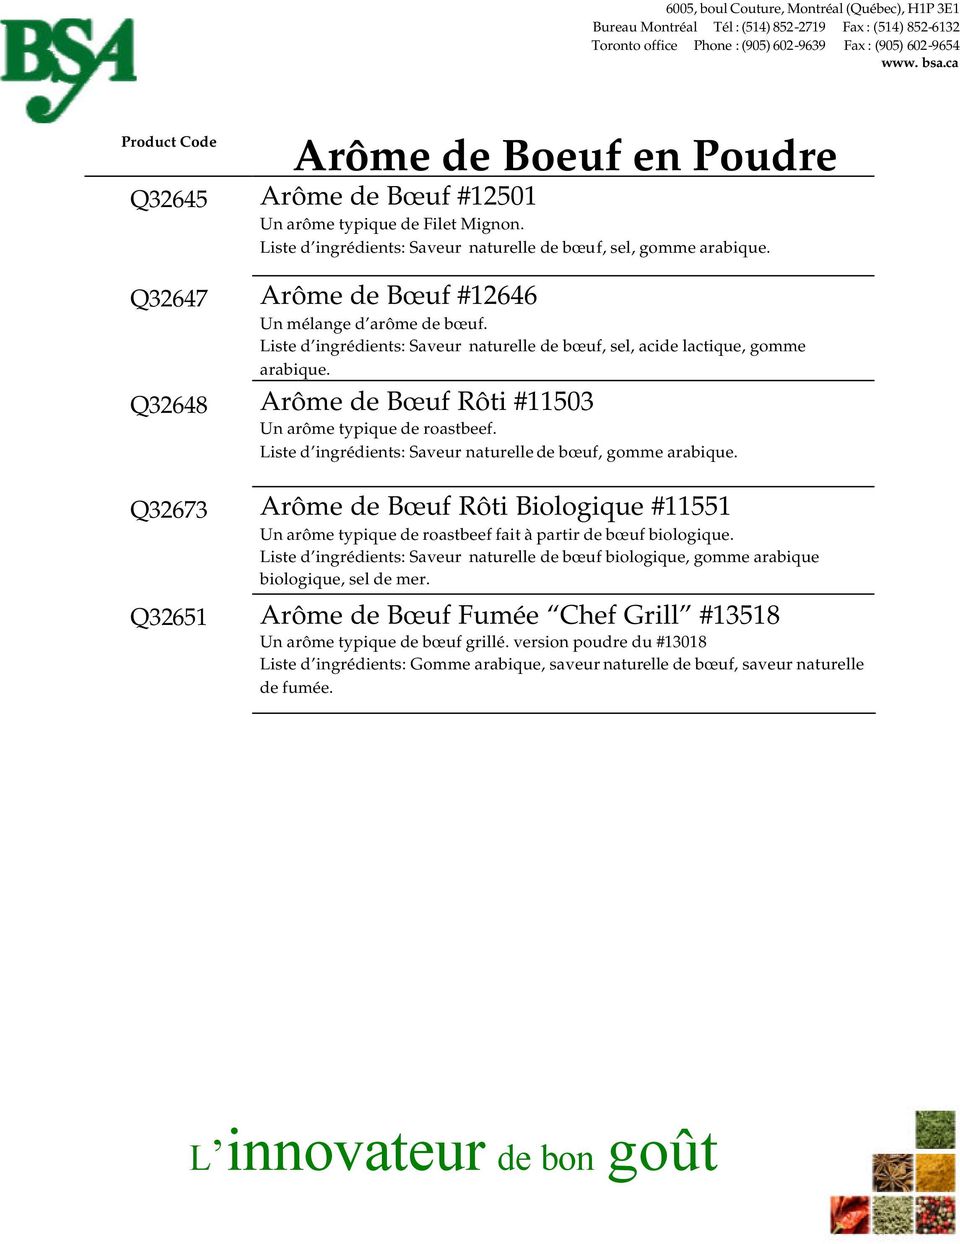 Q32648 Arôme de Bœuf Rôti #11503 Un arôme typique de roastbeef. Liste d ingrédients: Saveur naturelle de bœuf, gomme arabique.